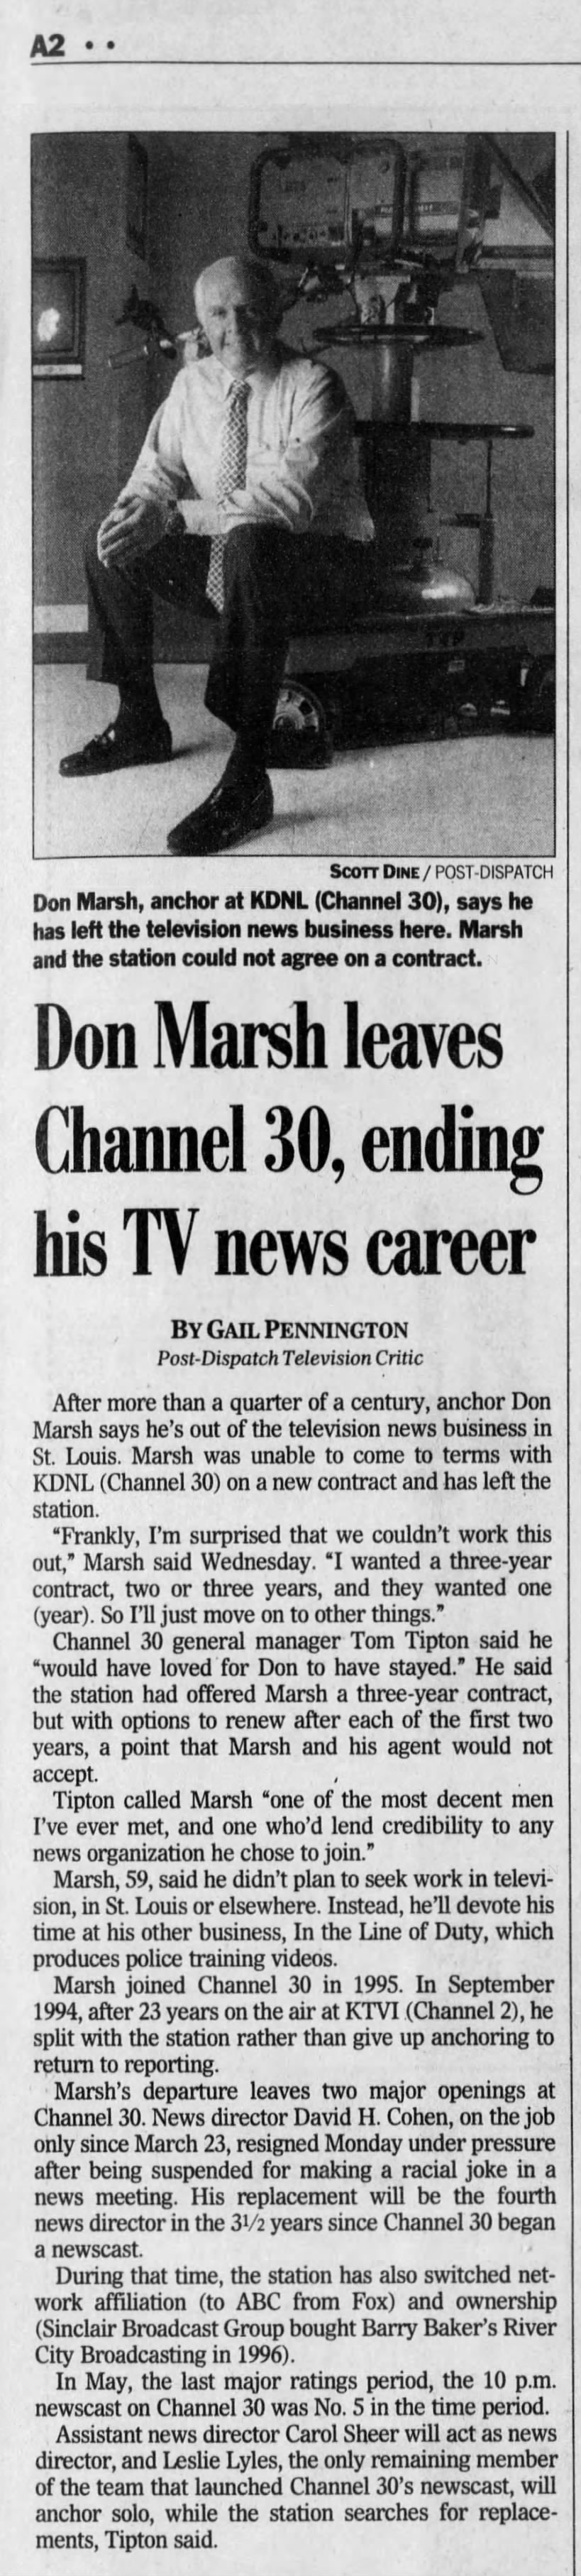 Don Marsh leaves Channel 30, ending his TV news career